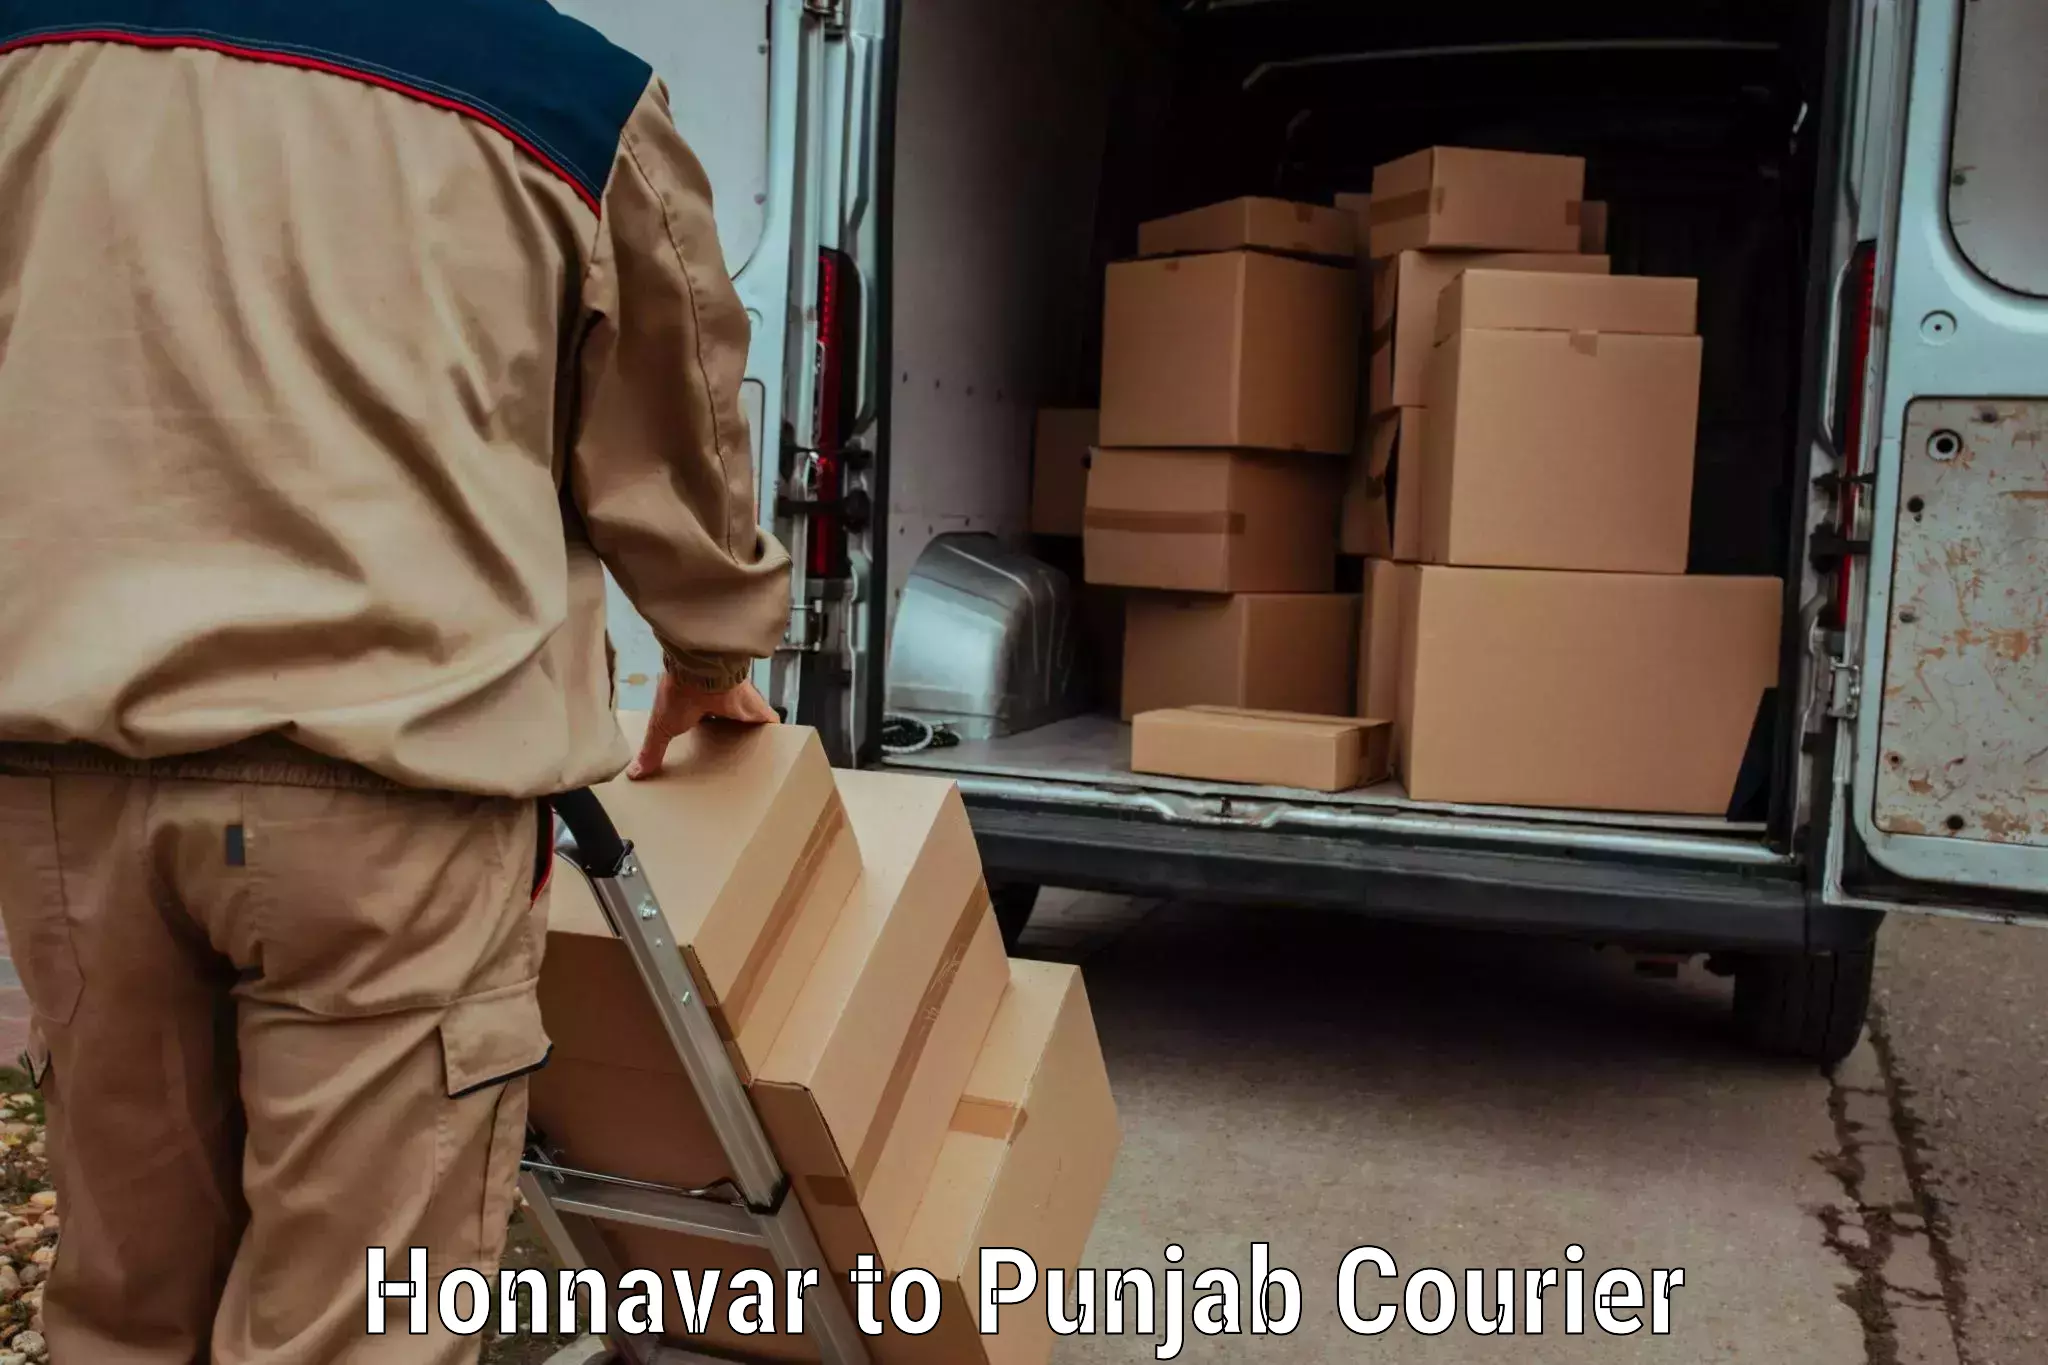 Reliable parcel services Honnavar to Goindwal Sahib